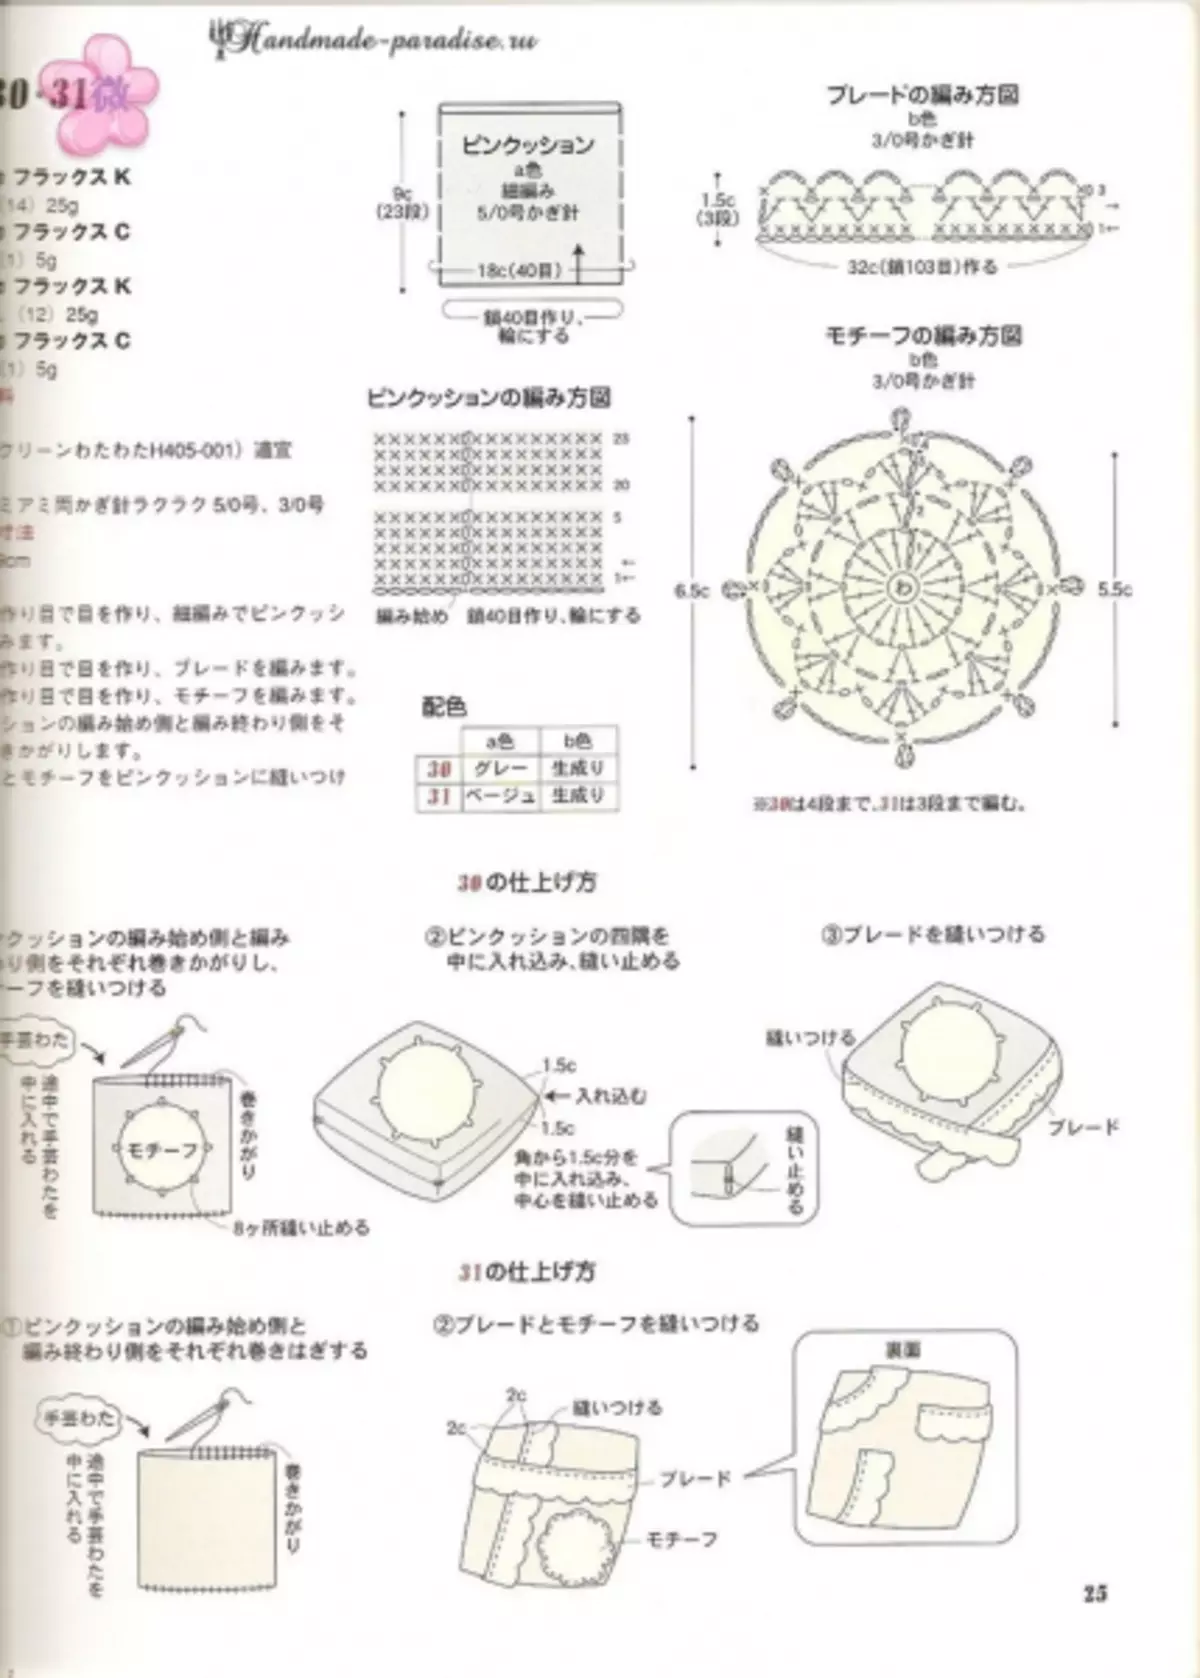 Crochet Summer Accessories. Japanese magazine with schemes